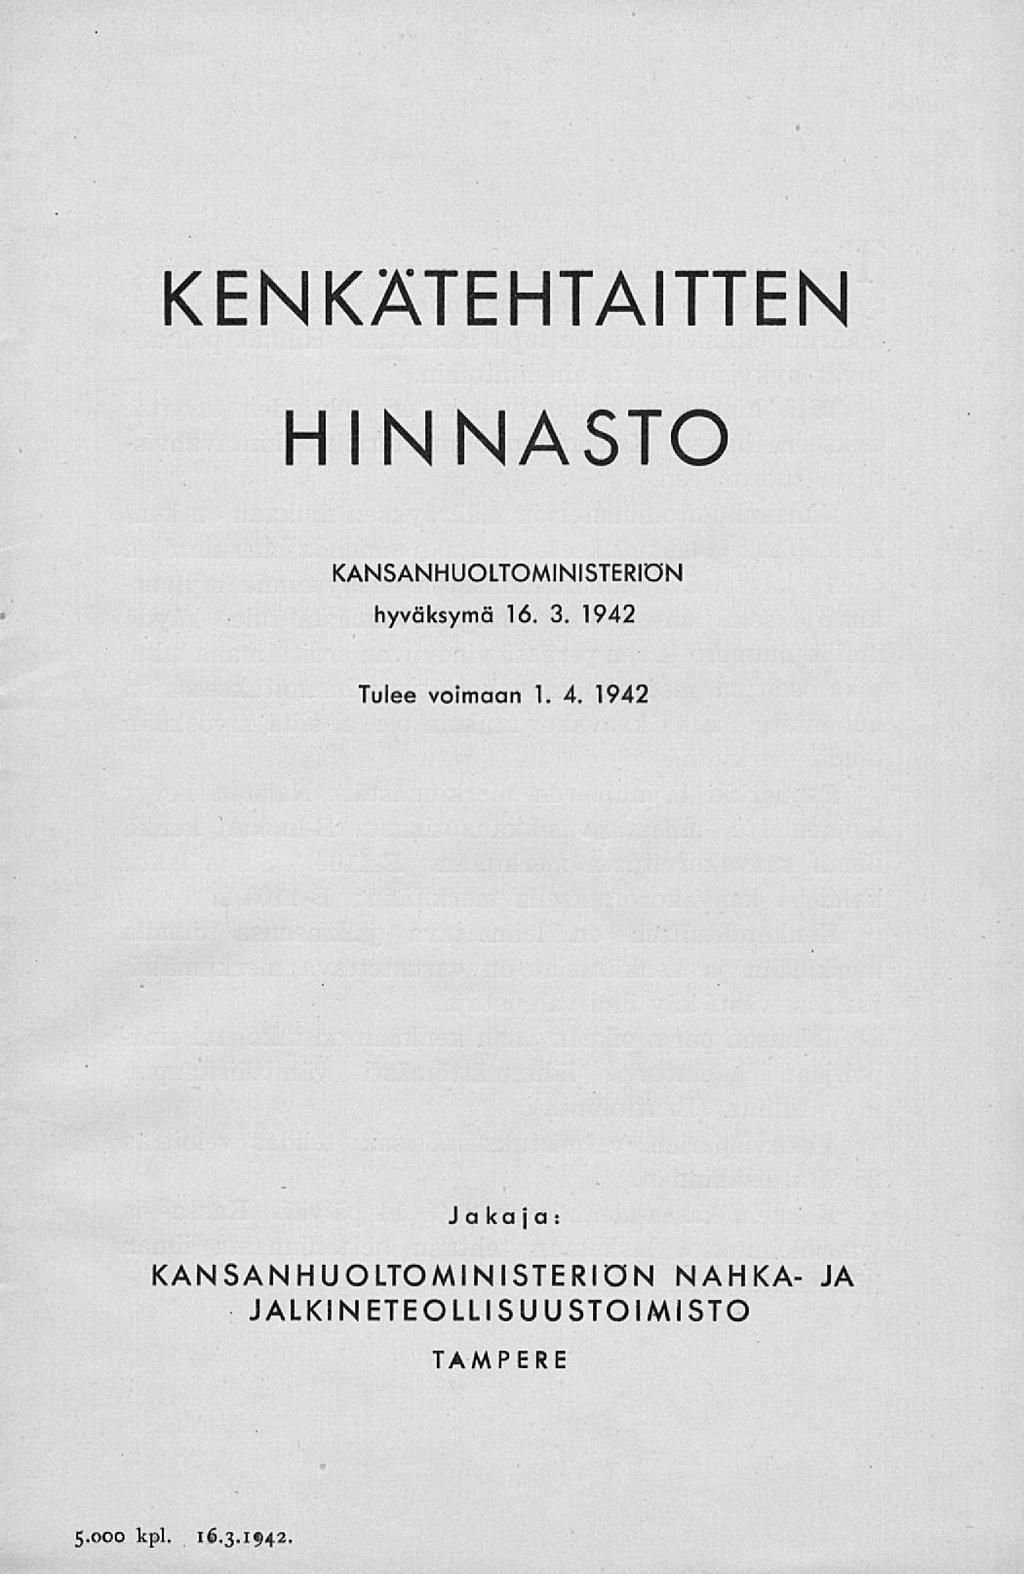 KENKÄTEHTAITTEN HINNASTO KANSANHUOLTOMINISTERIÖN hyväksymä 16. 3. 1942 Tulee vomaan 1. 4.